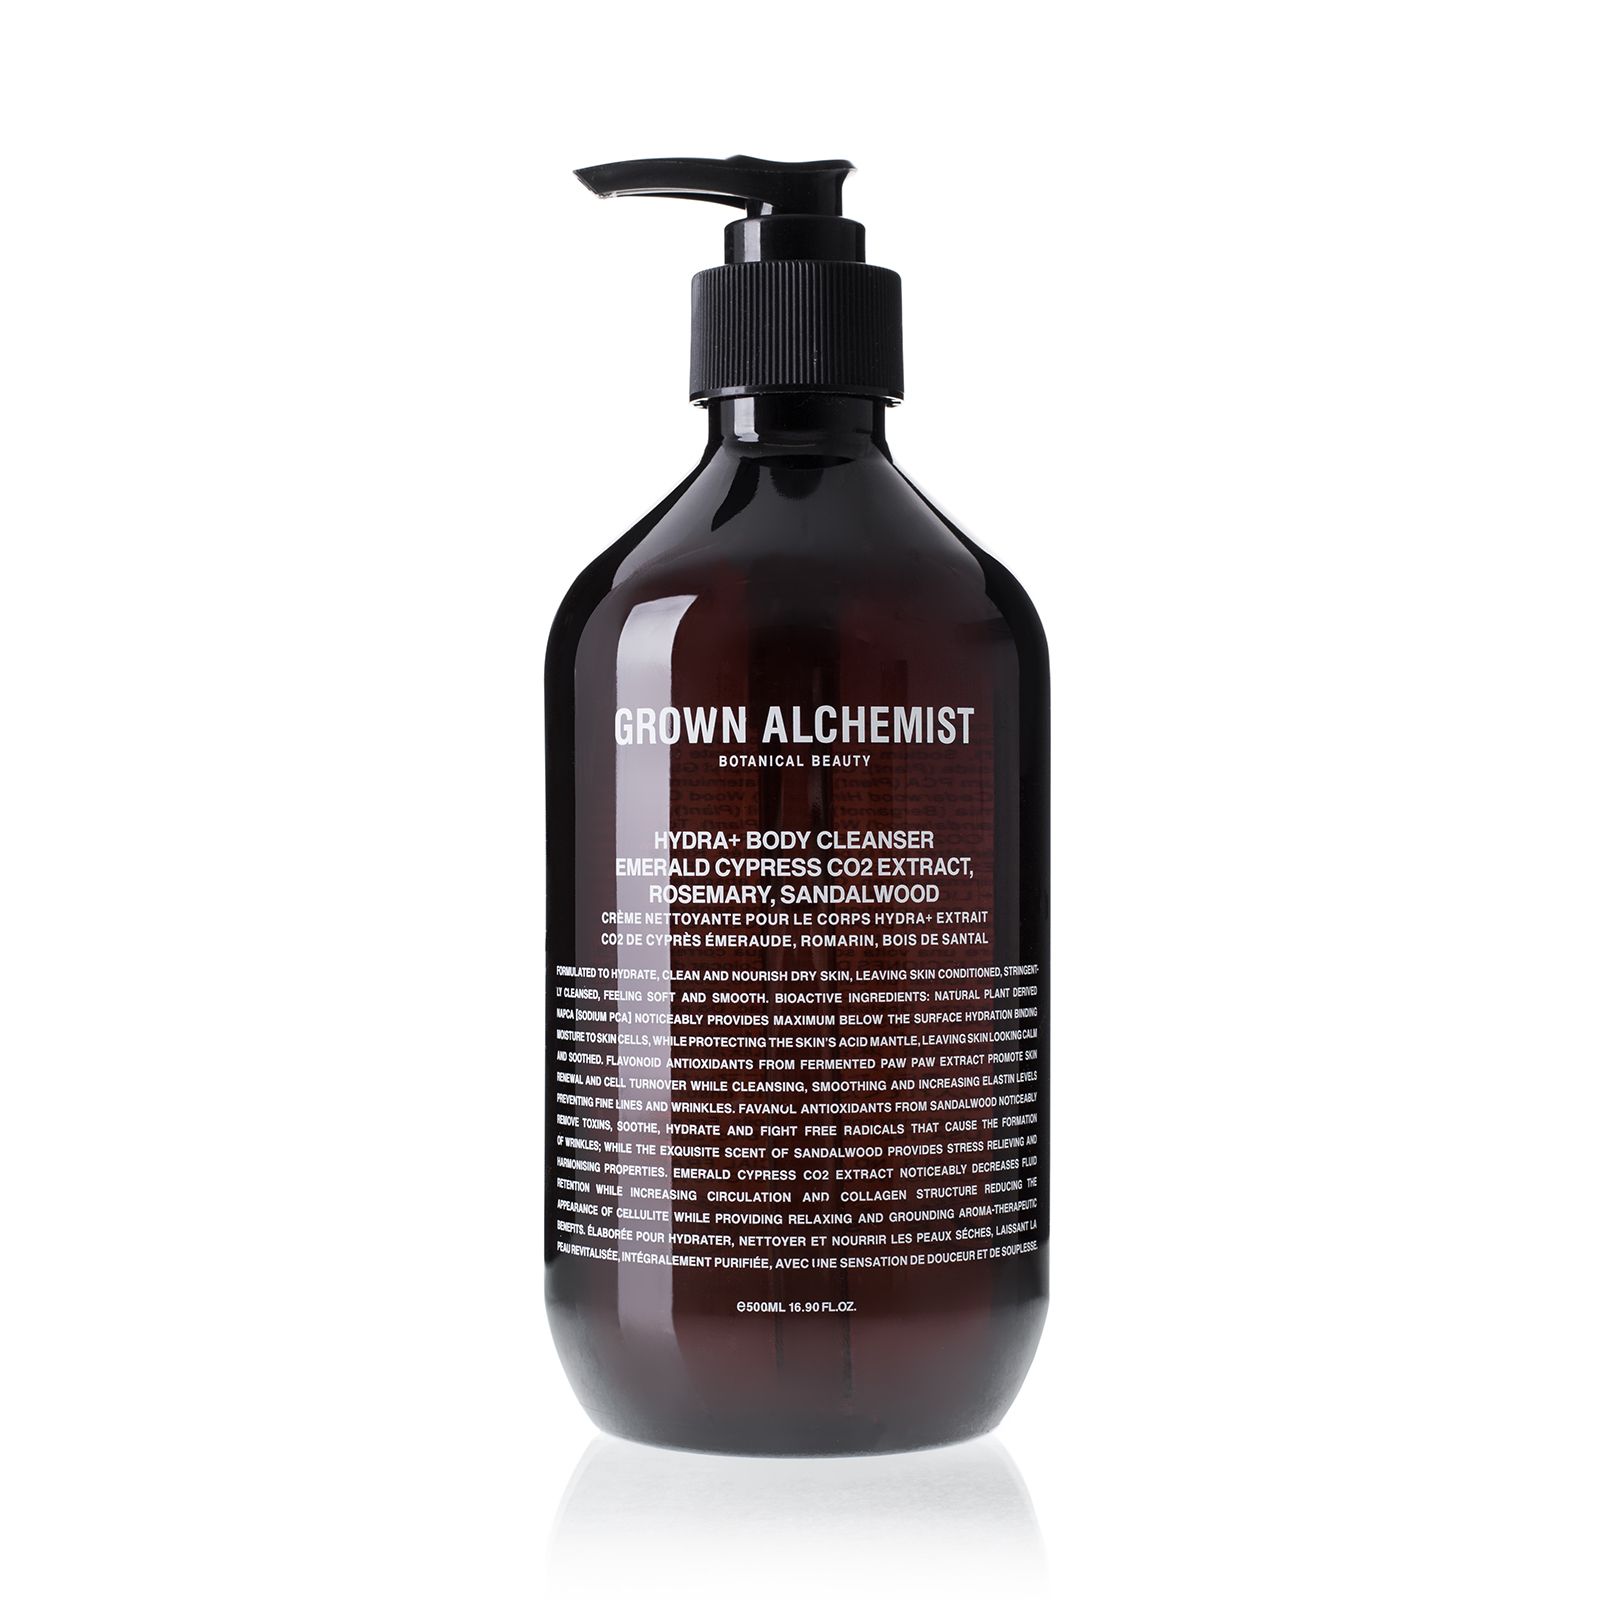 Grown Alchemist Hydra+ Body Cleanser